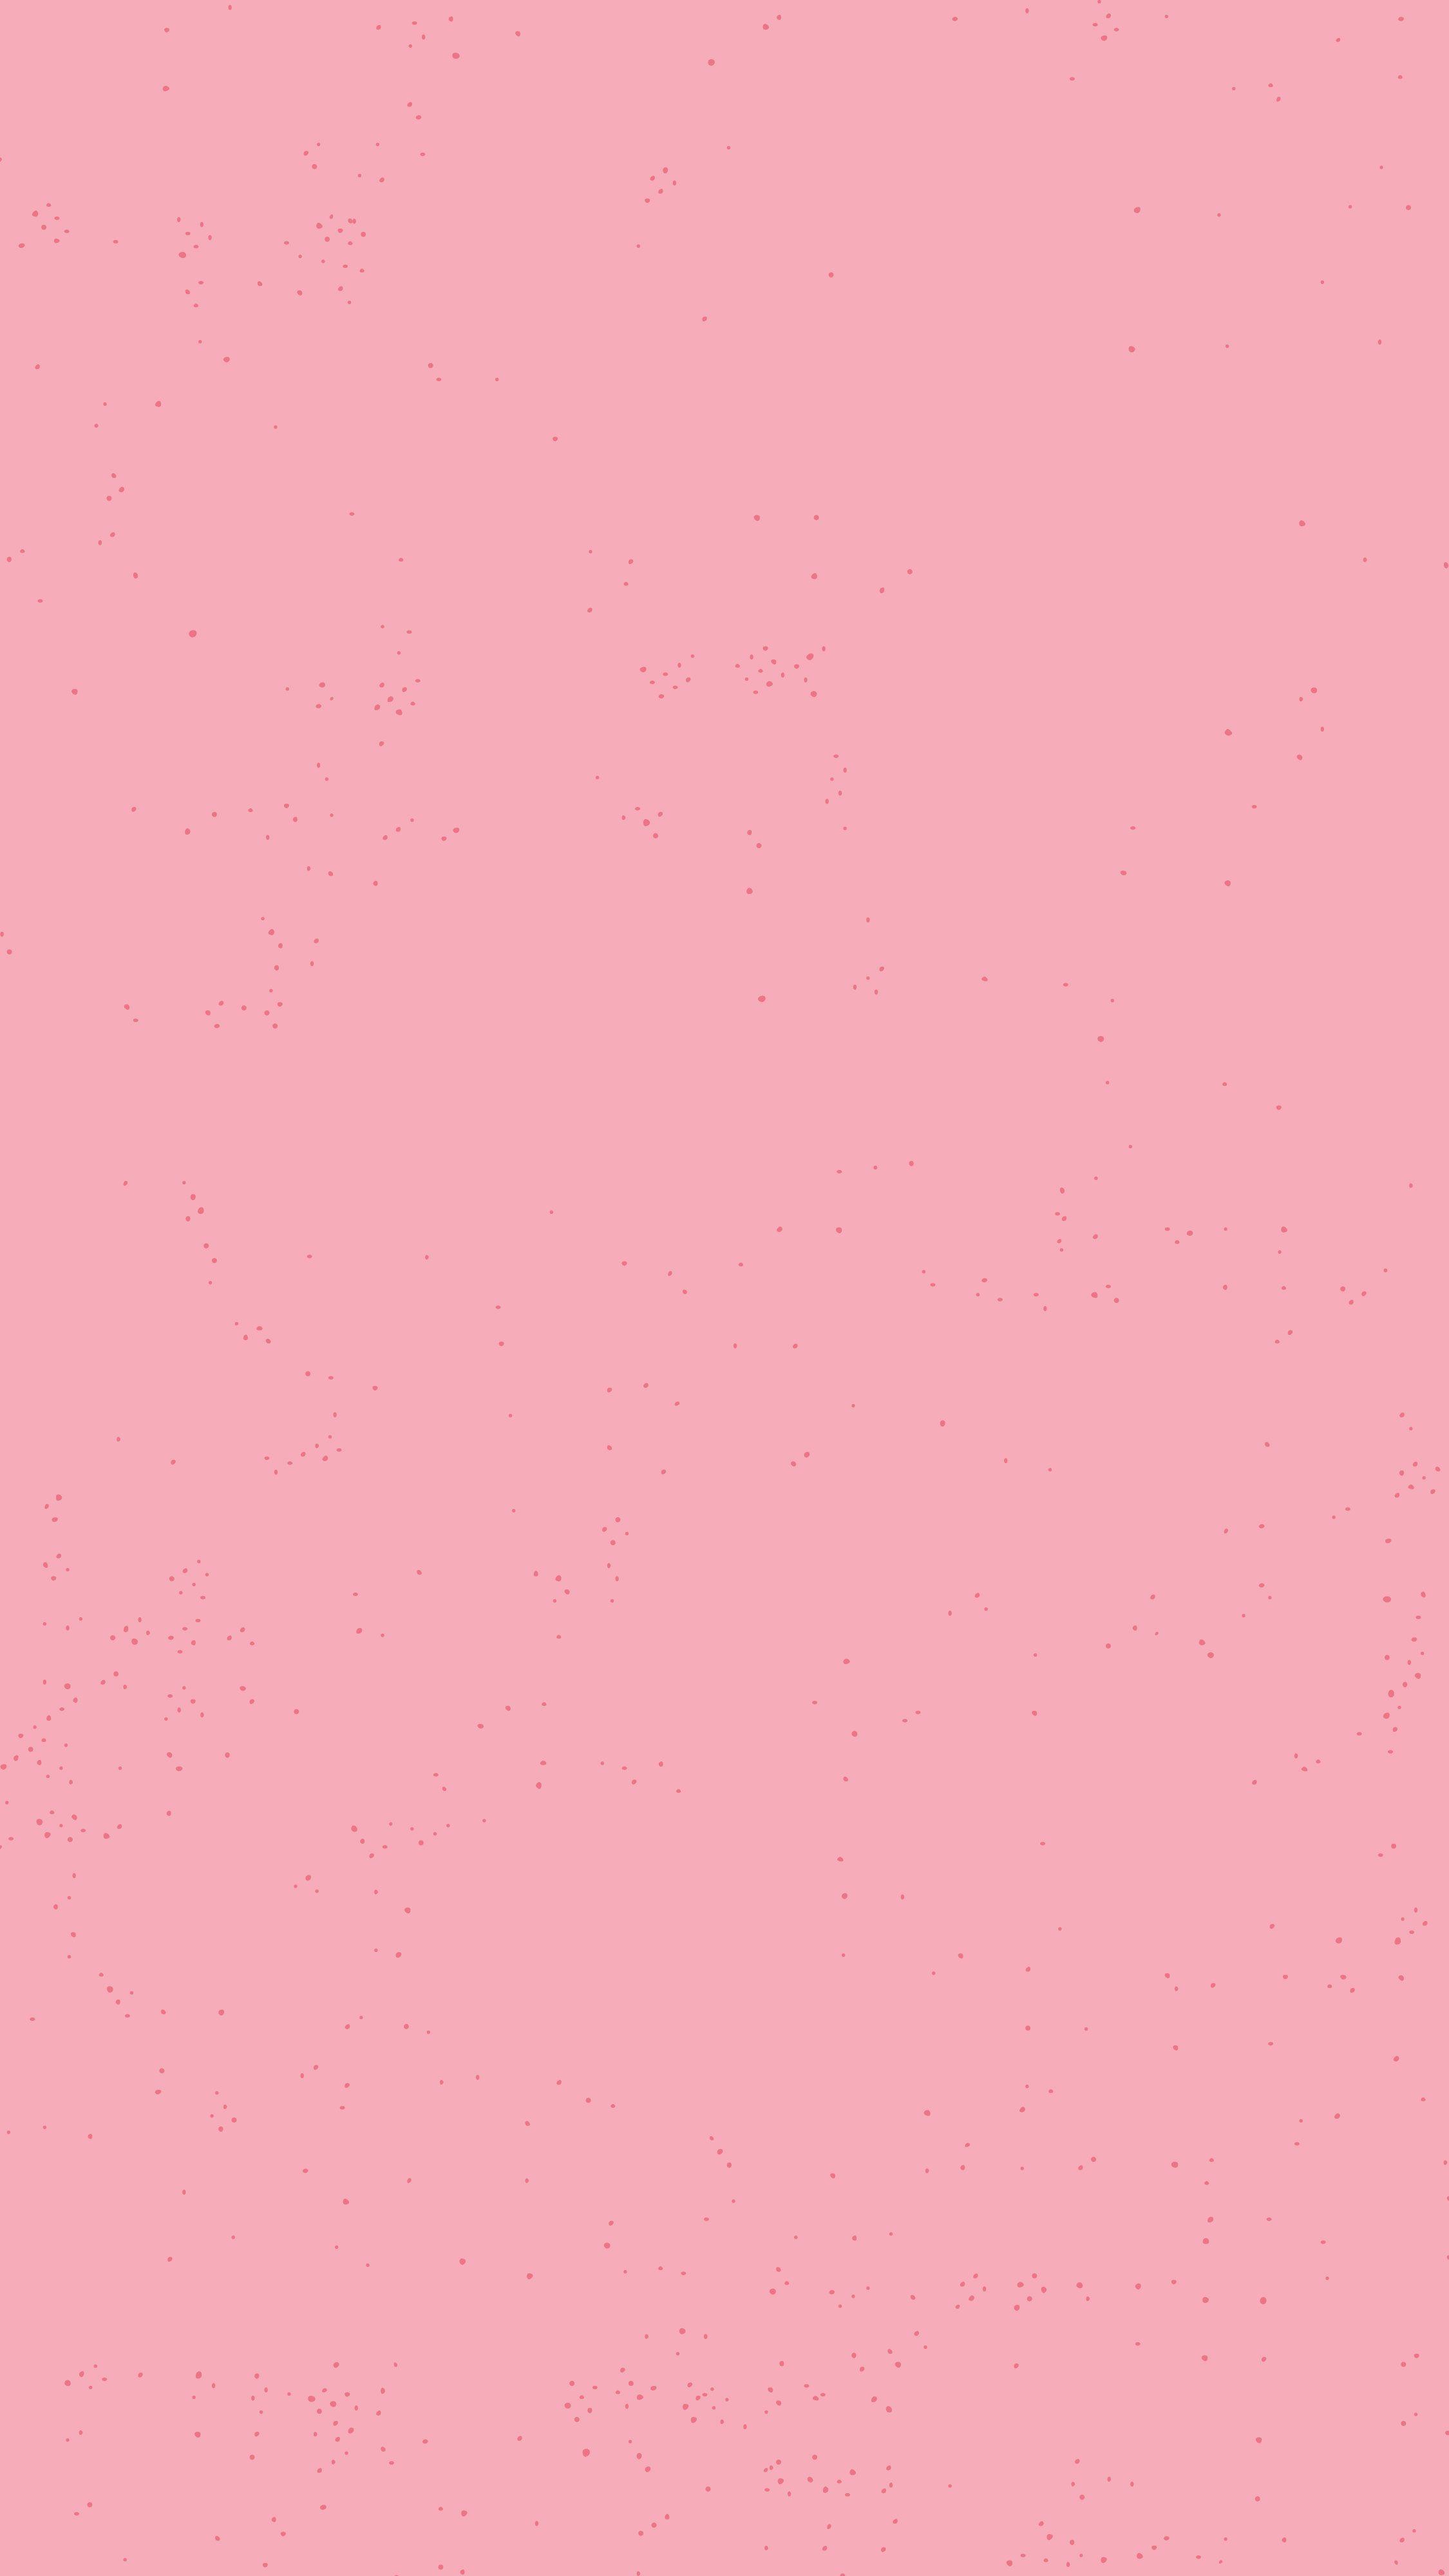 Cave nền màu hồng nhạt polos trên Tumblr sẽ khiến bạn phấn khích tìm kiếm kiểu nền mới lạ cho blog của mình. Hãy khám phá những kiểu nền đẹp mắt với thiết kế đơn giản và tiện lợi nhất!